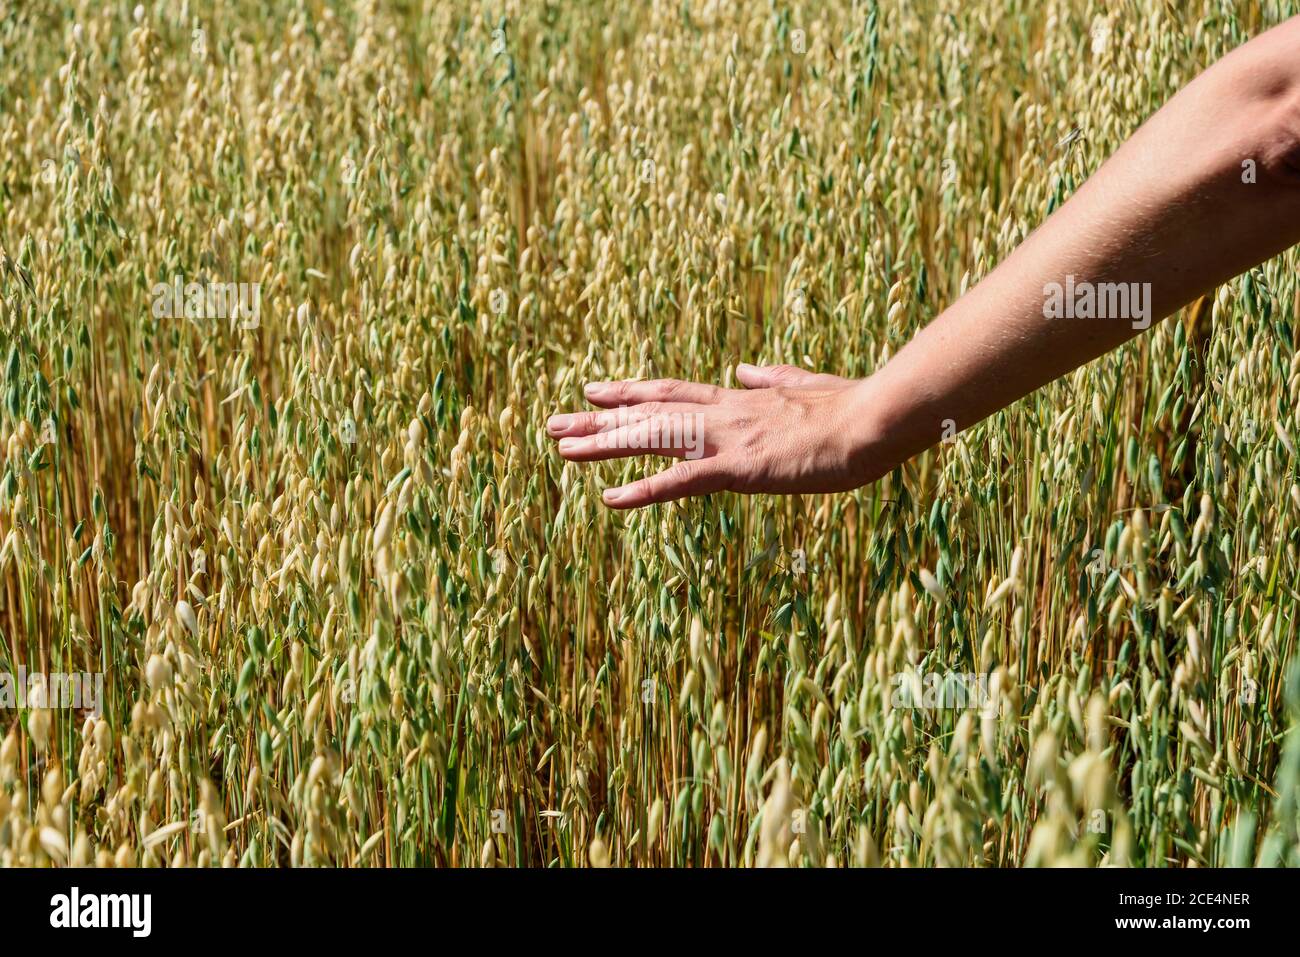 Die Hand des Bauern berührt die Ohren des Roggenoats. Grüne Ähren mit Körnern von Getreide Roggen Weizen Hafer Stockfoto